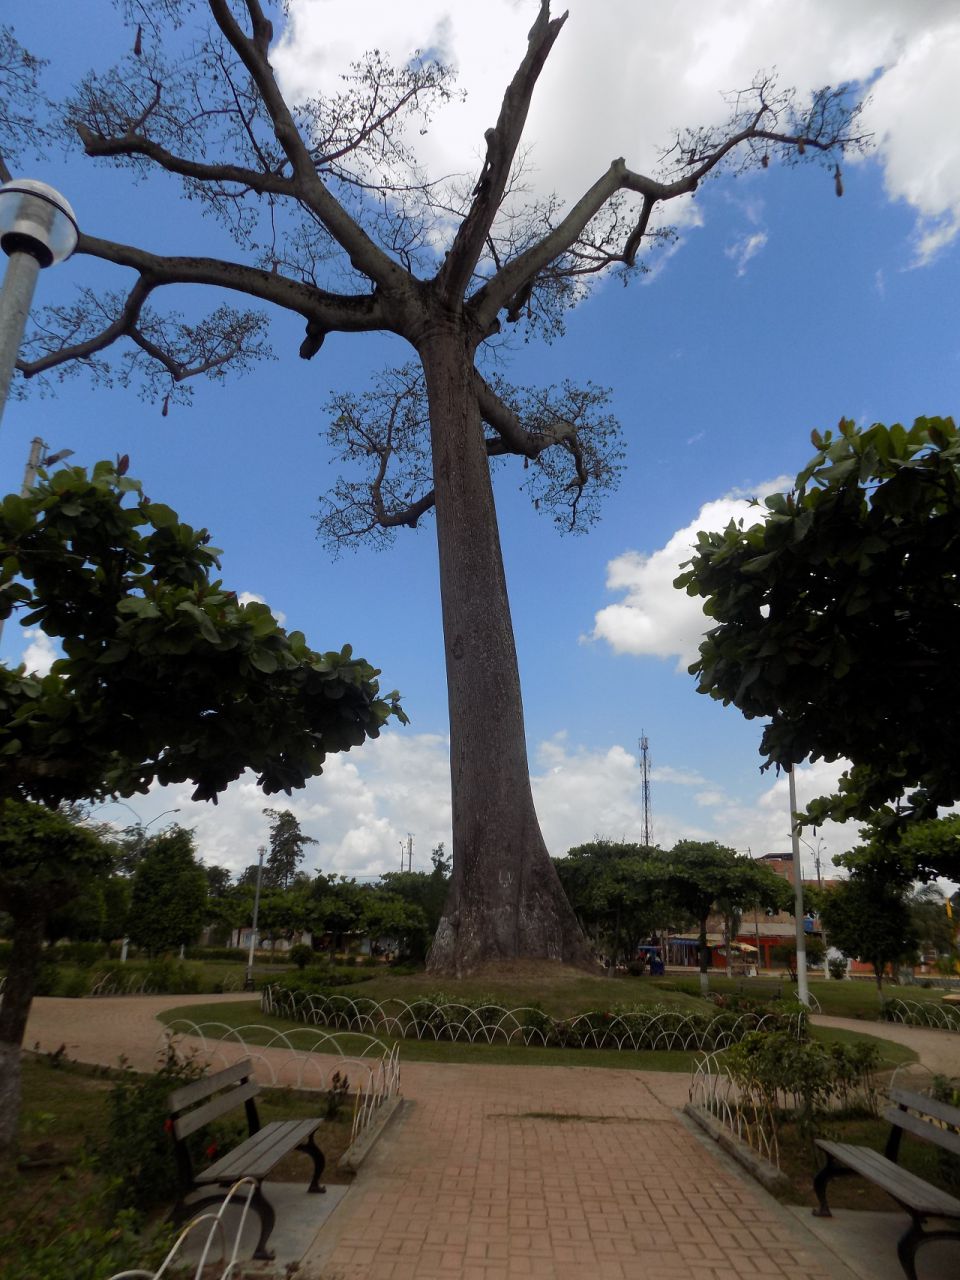 Центральная площадь. Священное дерево, по легенде пока живо дерево - жив город - Айяуаска.